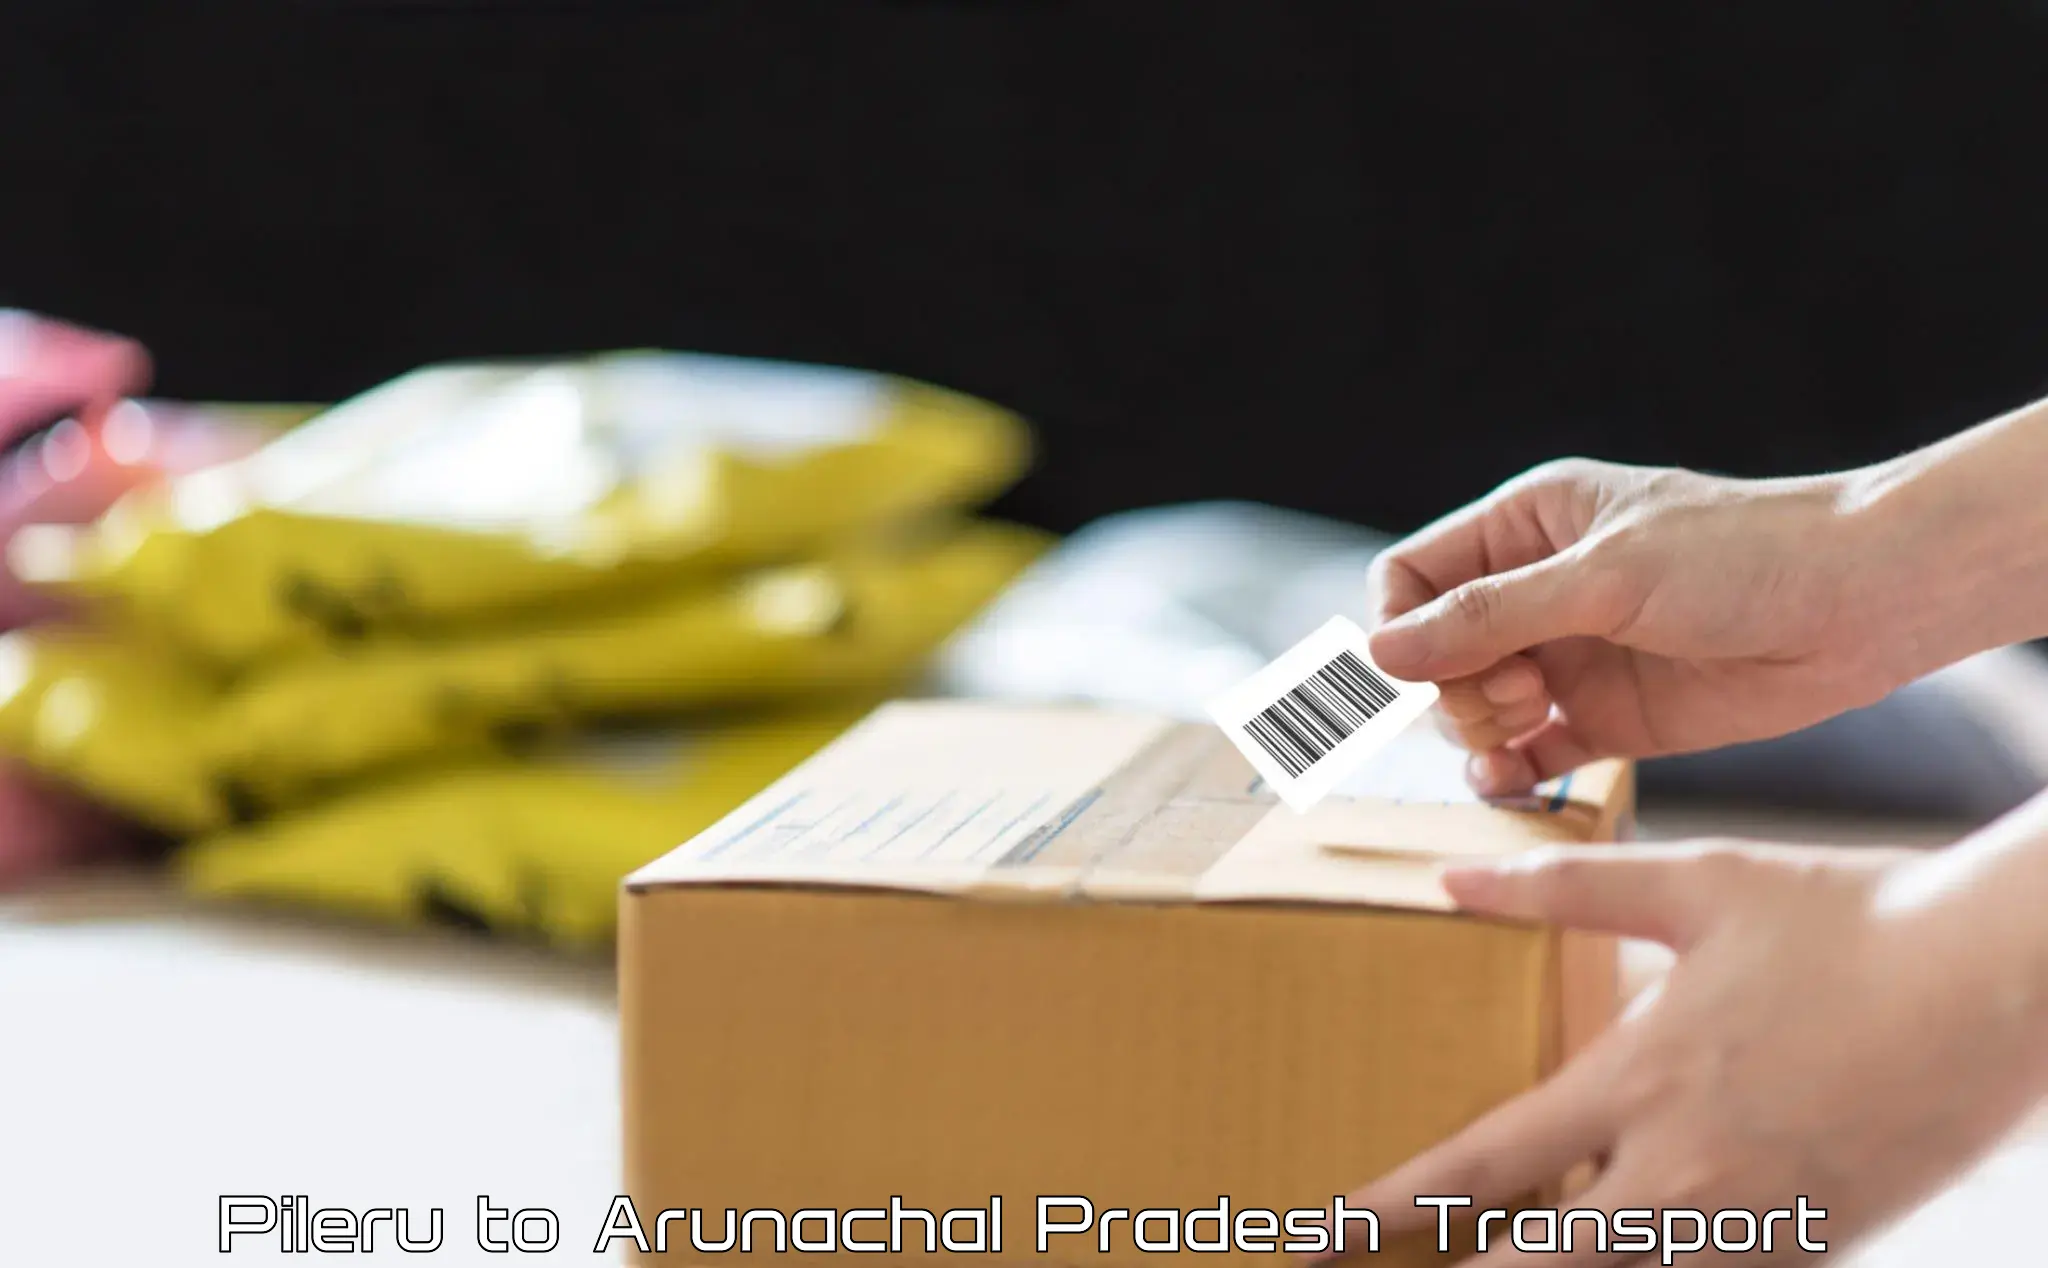 Cargo transportation services Pileru to Arunachal Pradesh